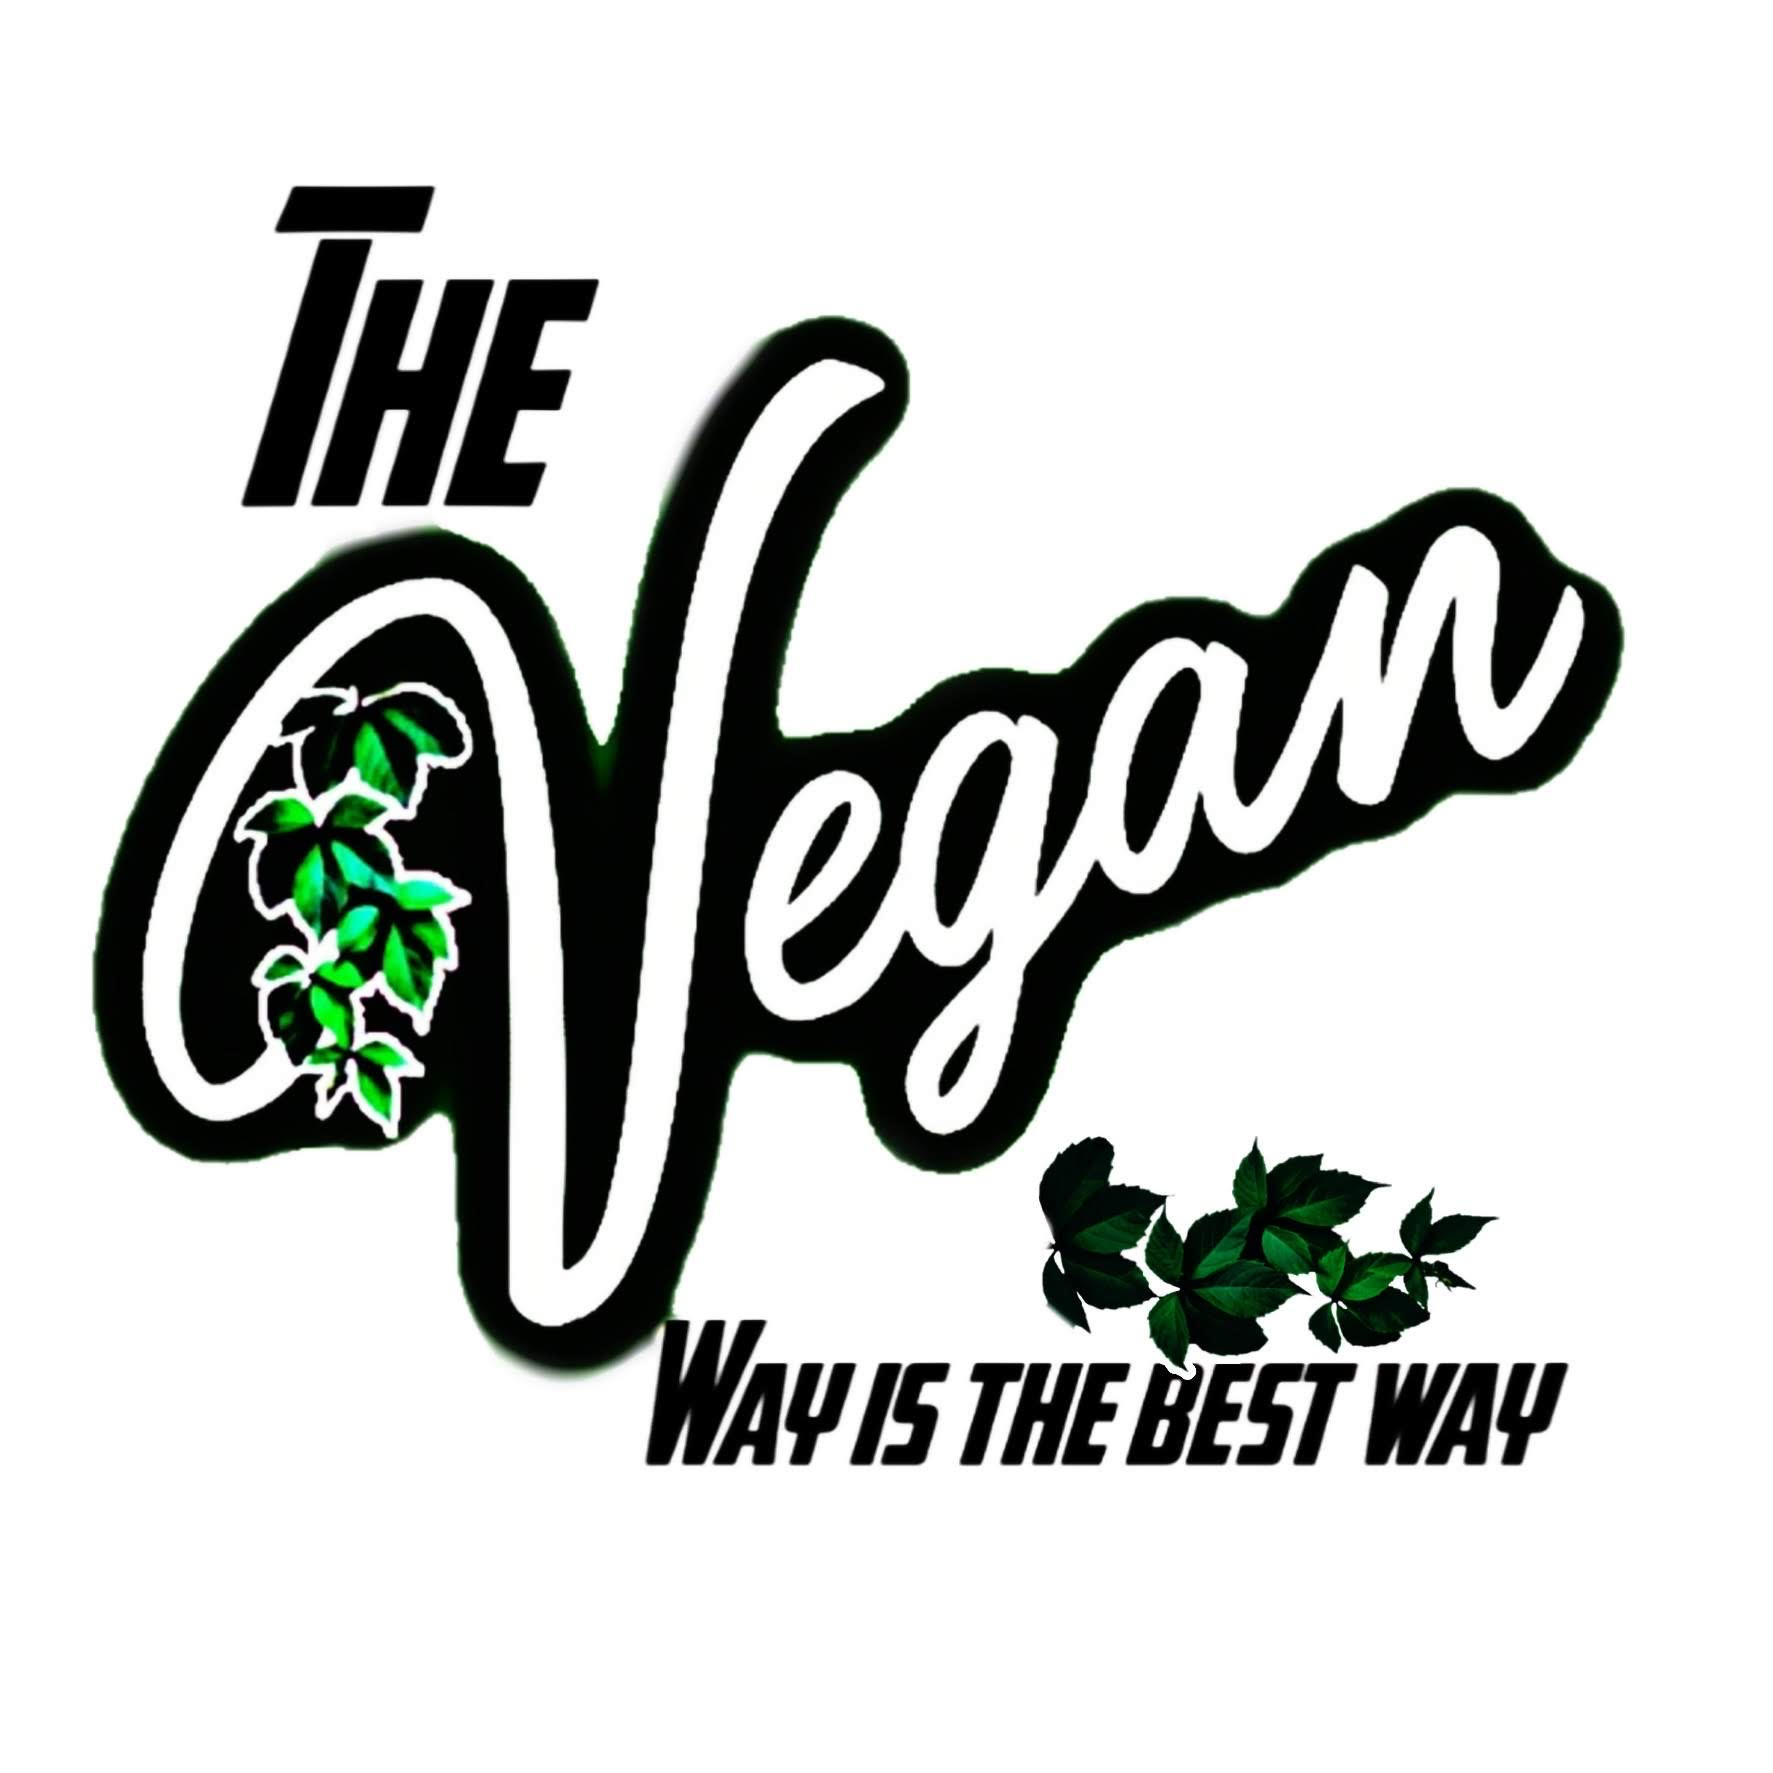 The Vegan Way is the Best Way